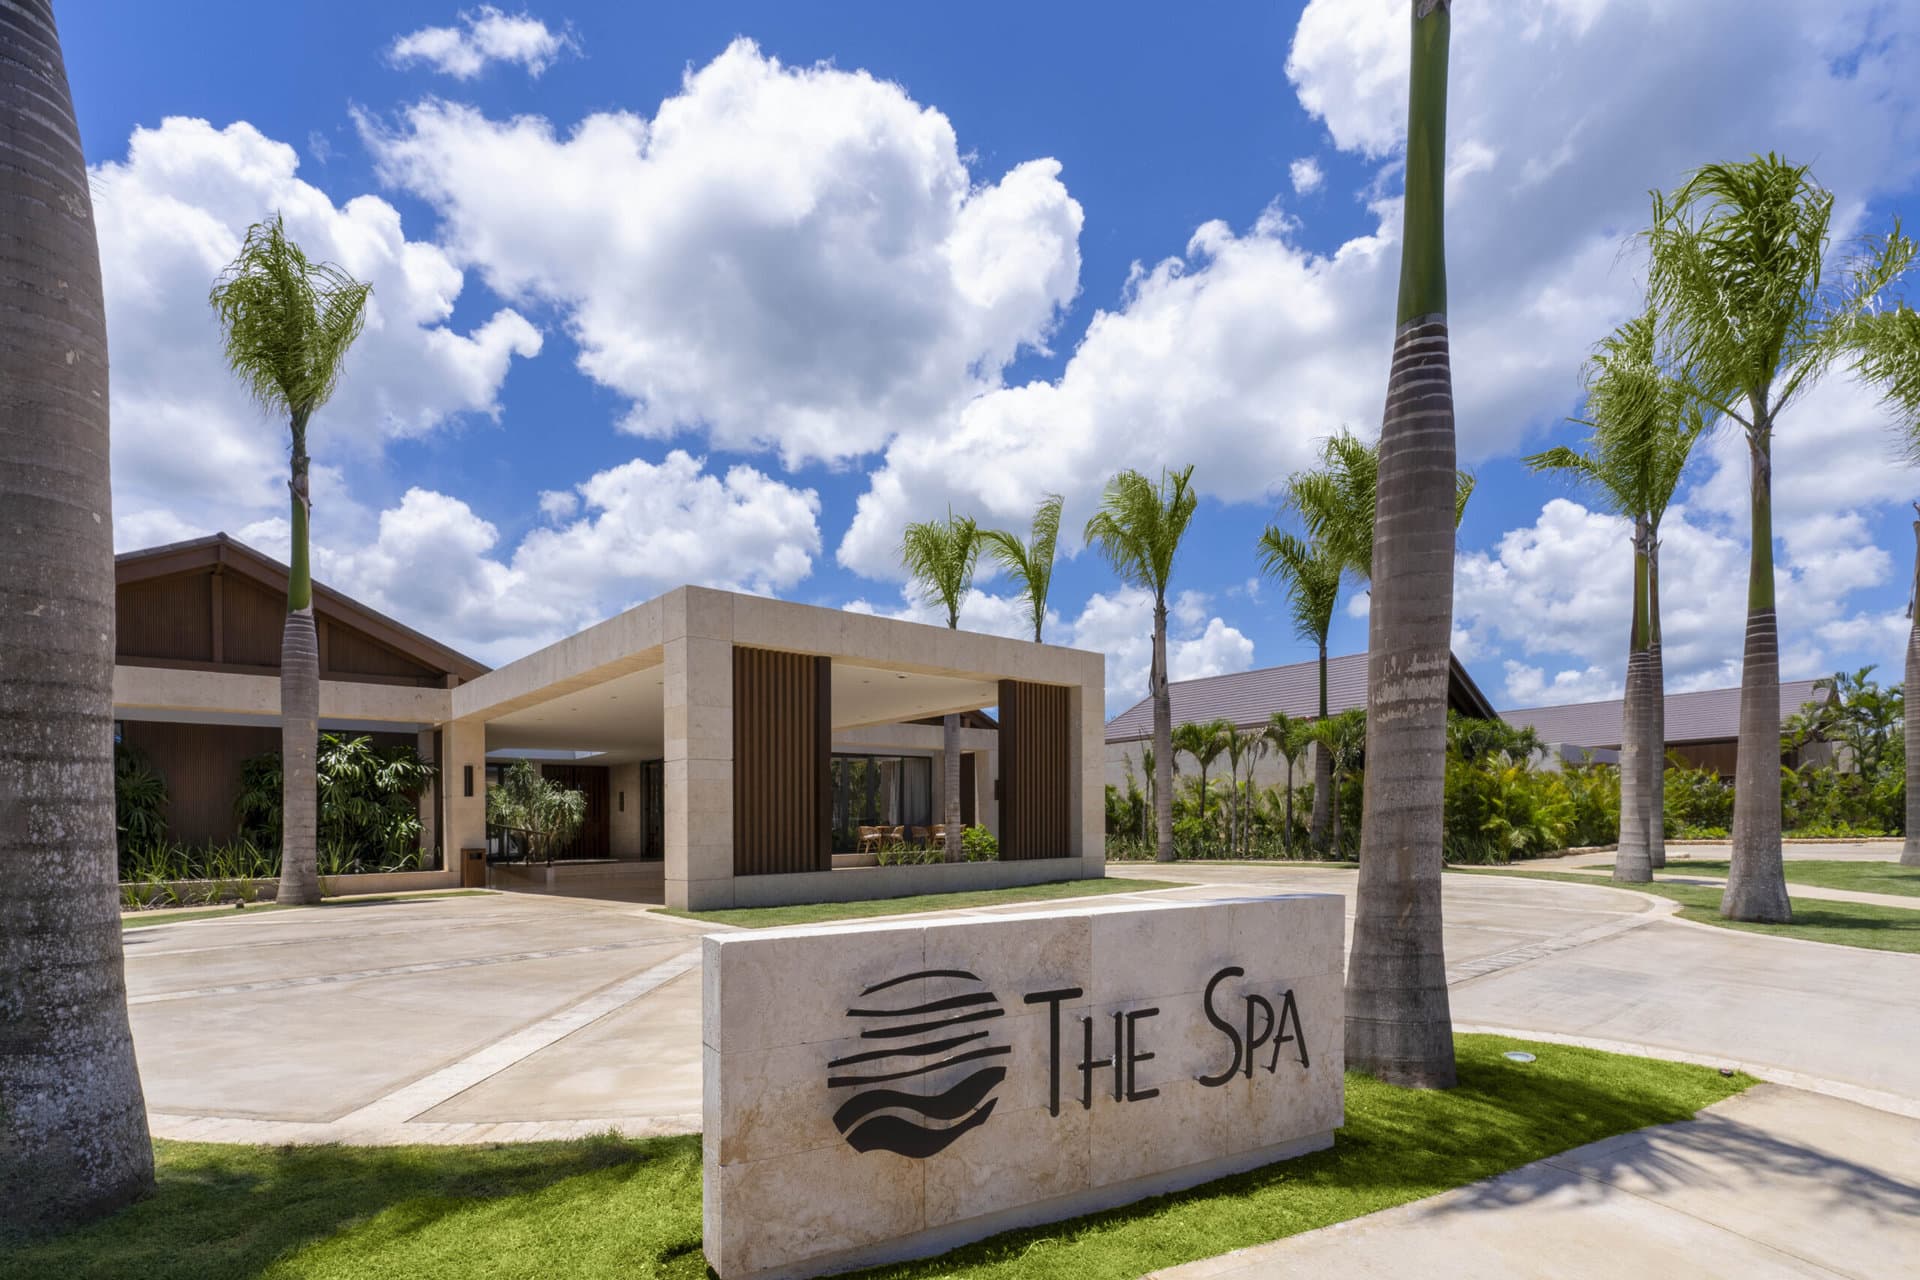 Entrance to The Spa at Casa de Campo in the Dominican Republic